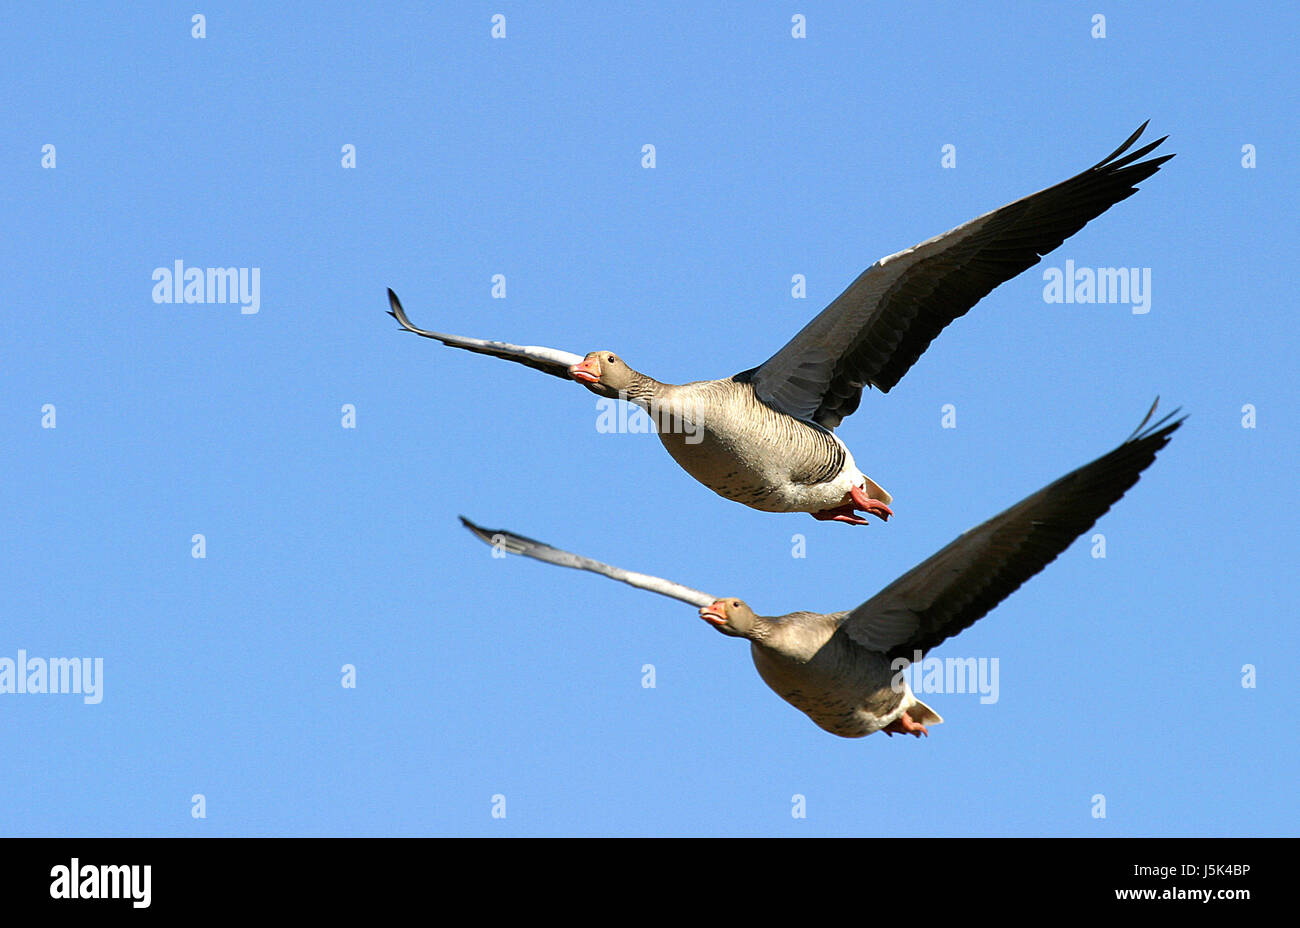 bird birds graugans anser anser greylag goose gnsevogel entenvogel feldgans Stock Photo